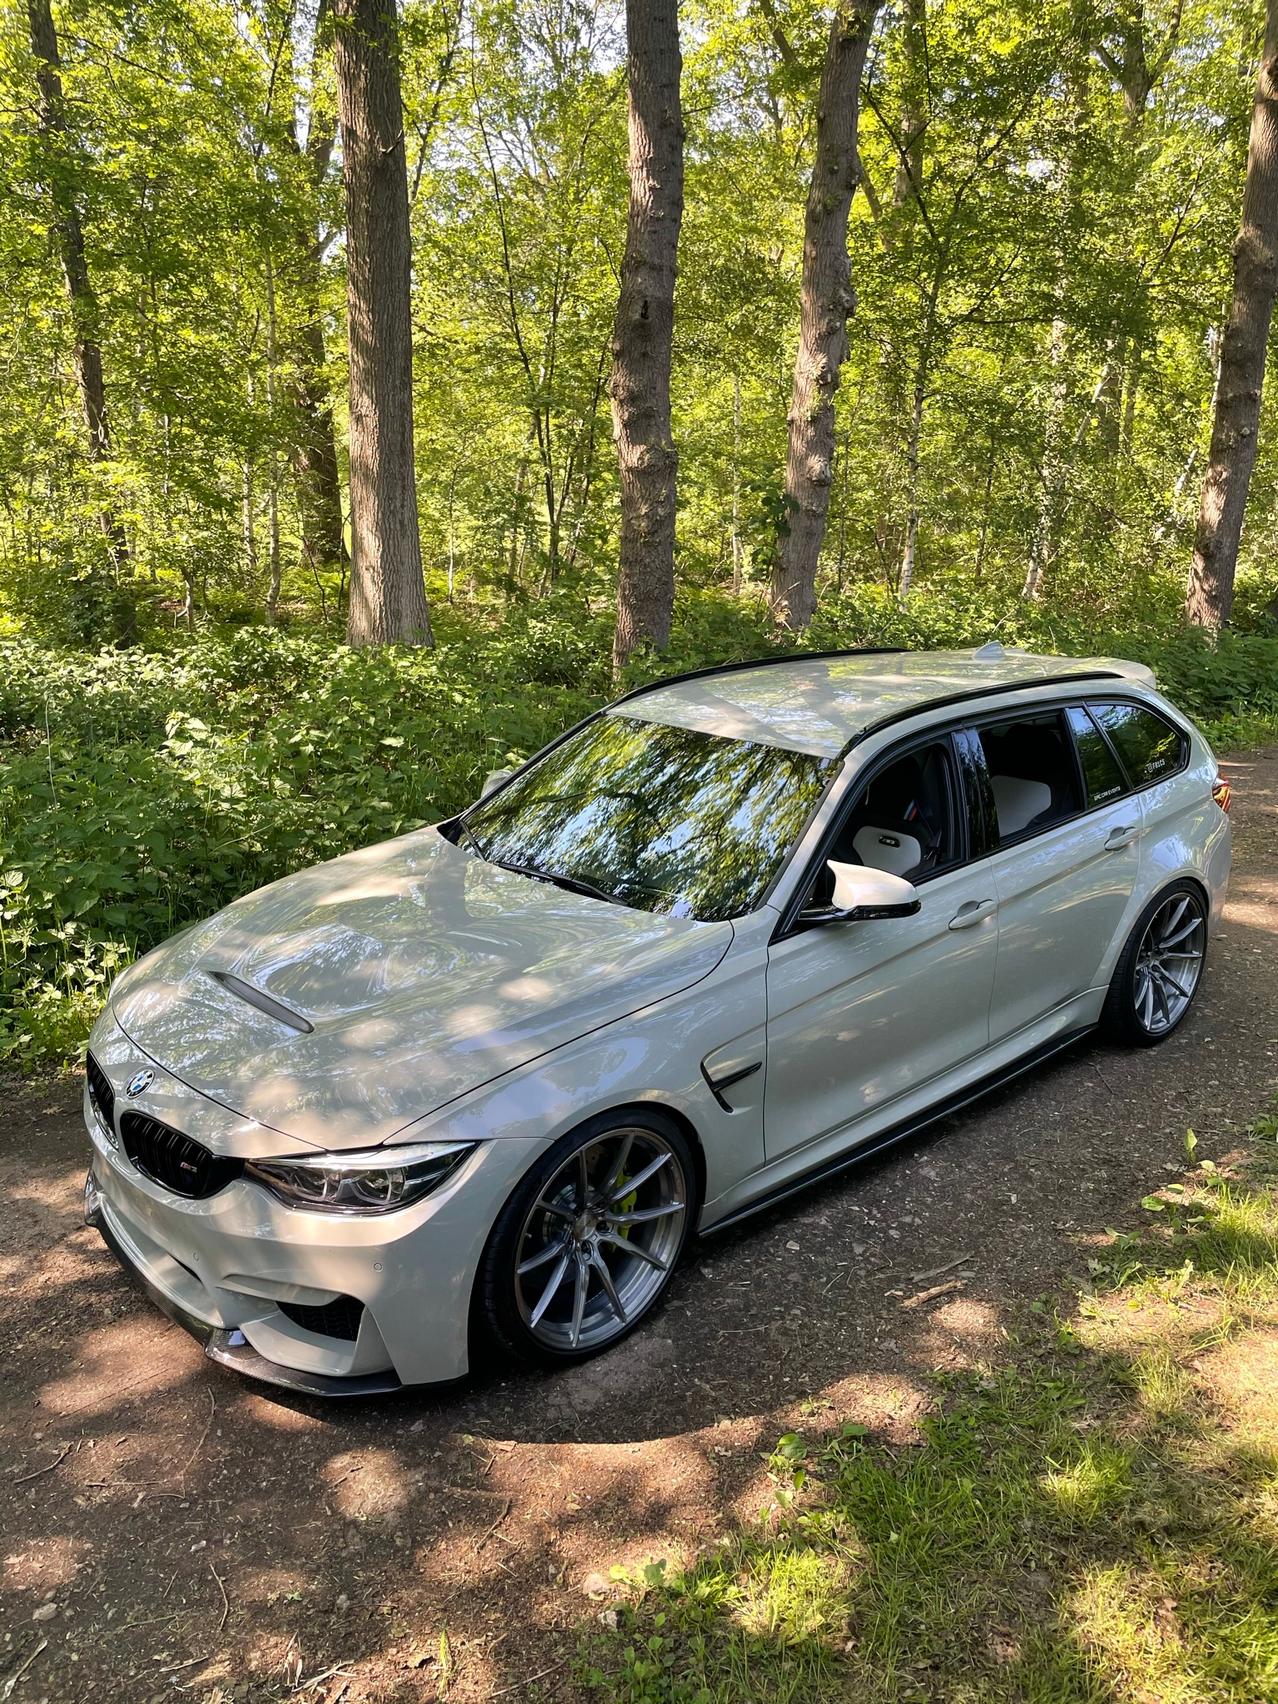 BMW M3 CS Touring